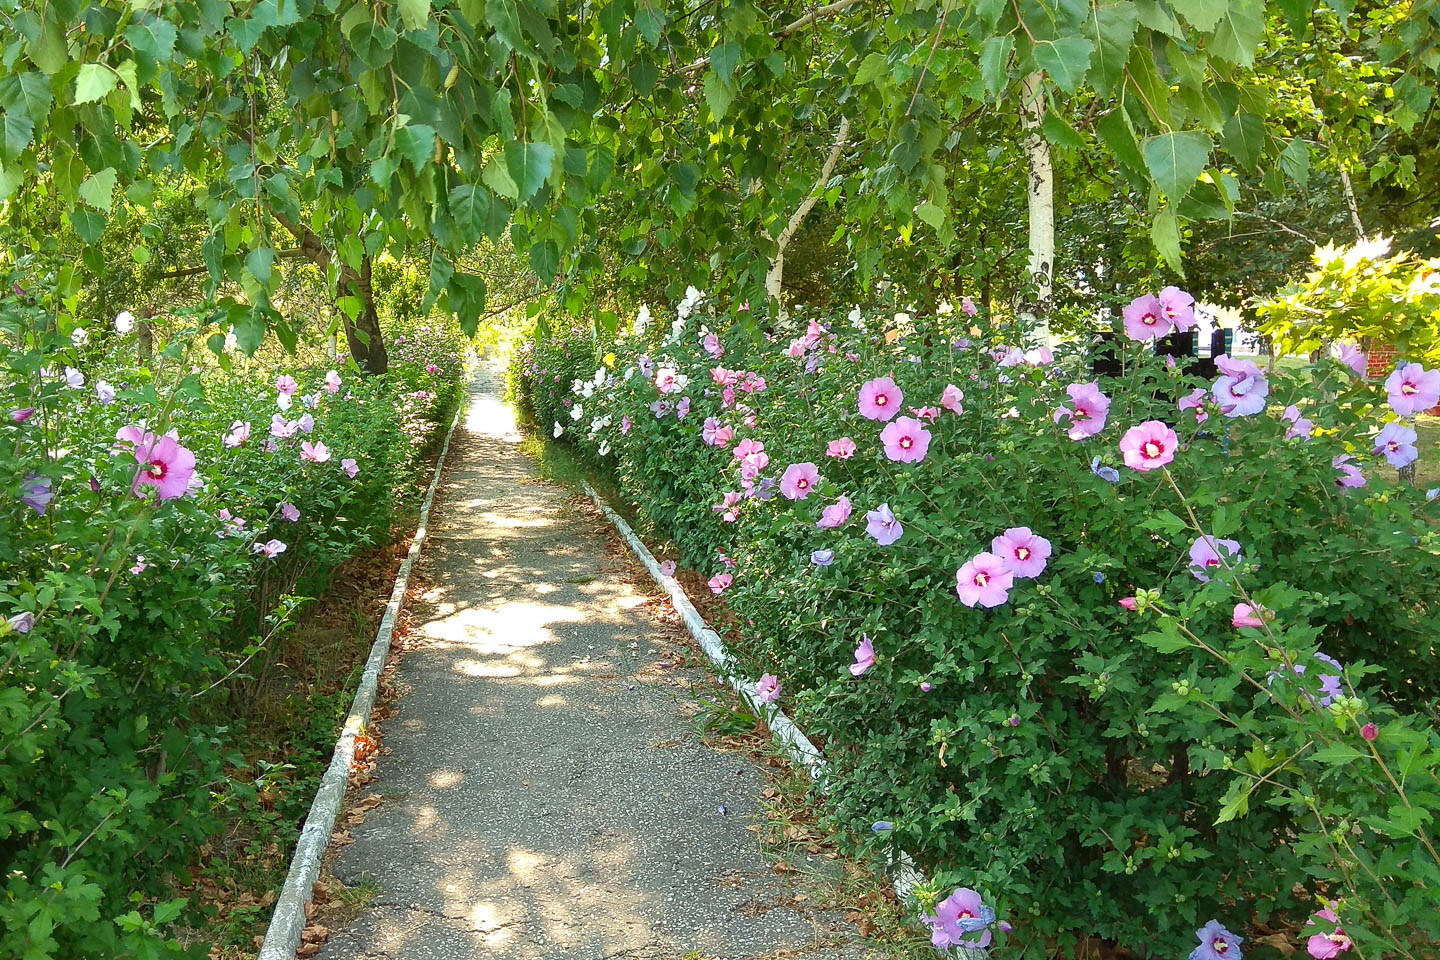 Rose of Sharon hedge on both sides of a sidewalk